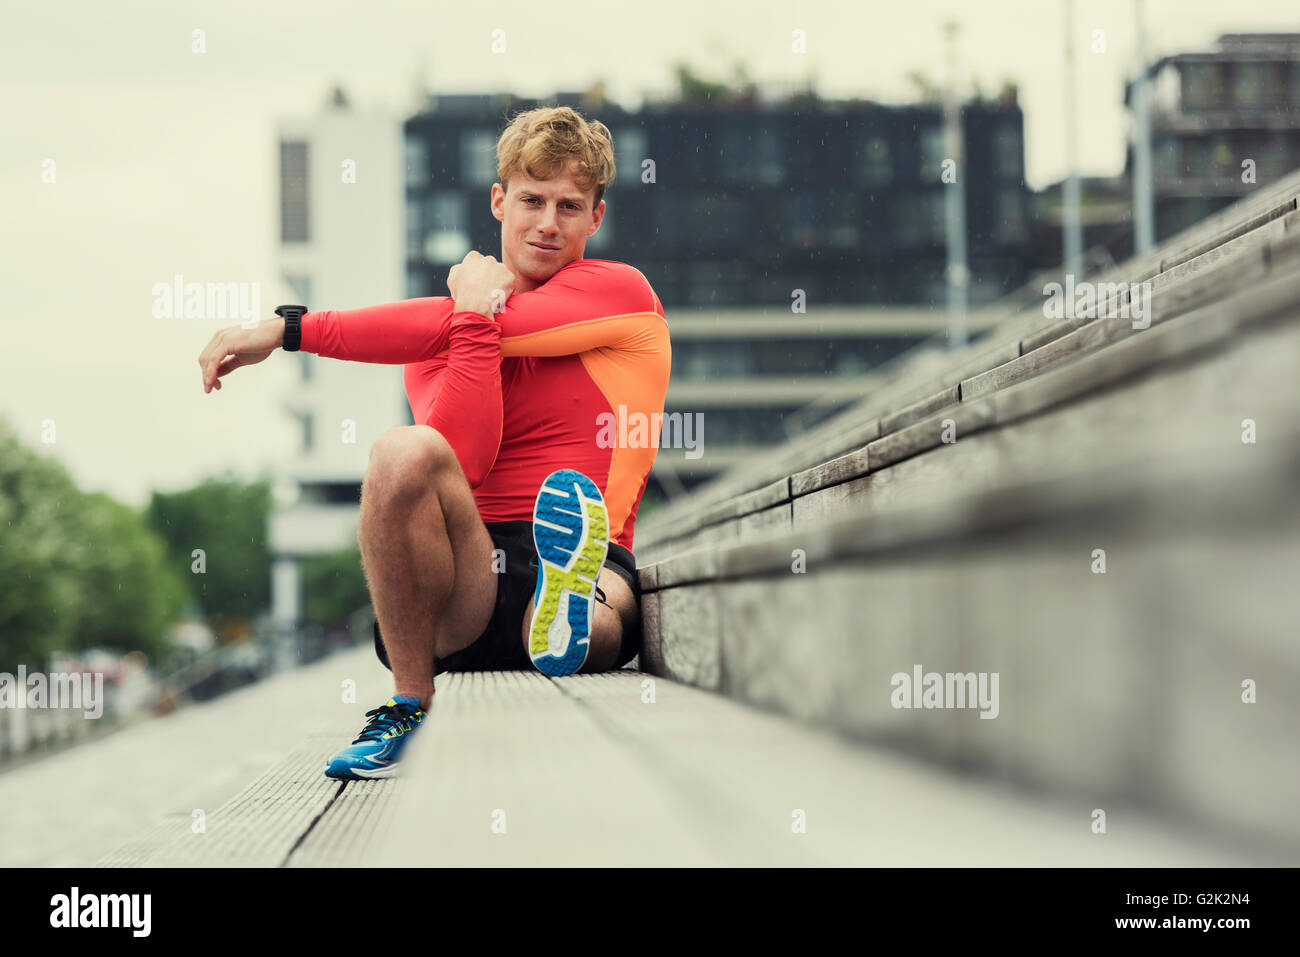 Uomo sportivo immagini e fotografie stock ad alta risoluzione - Alamy